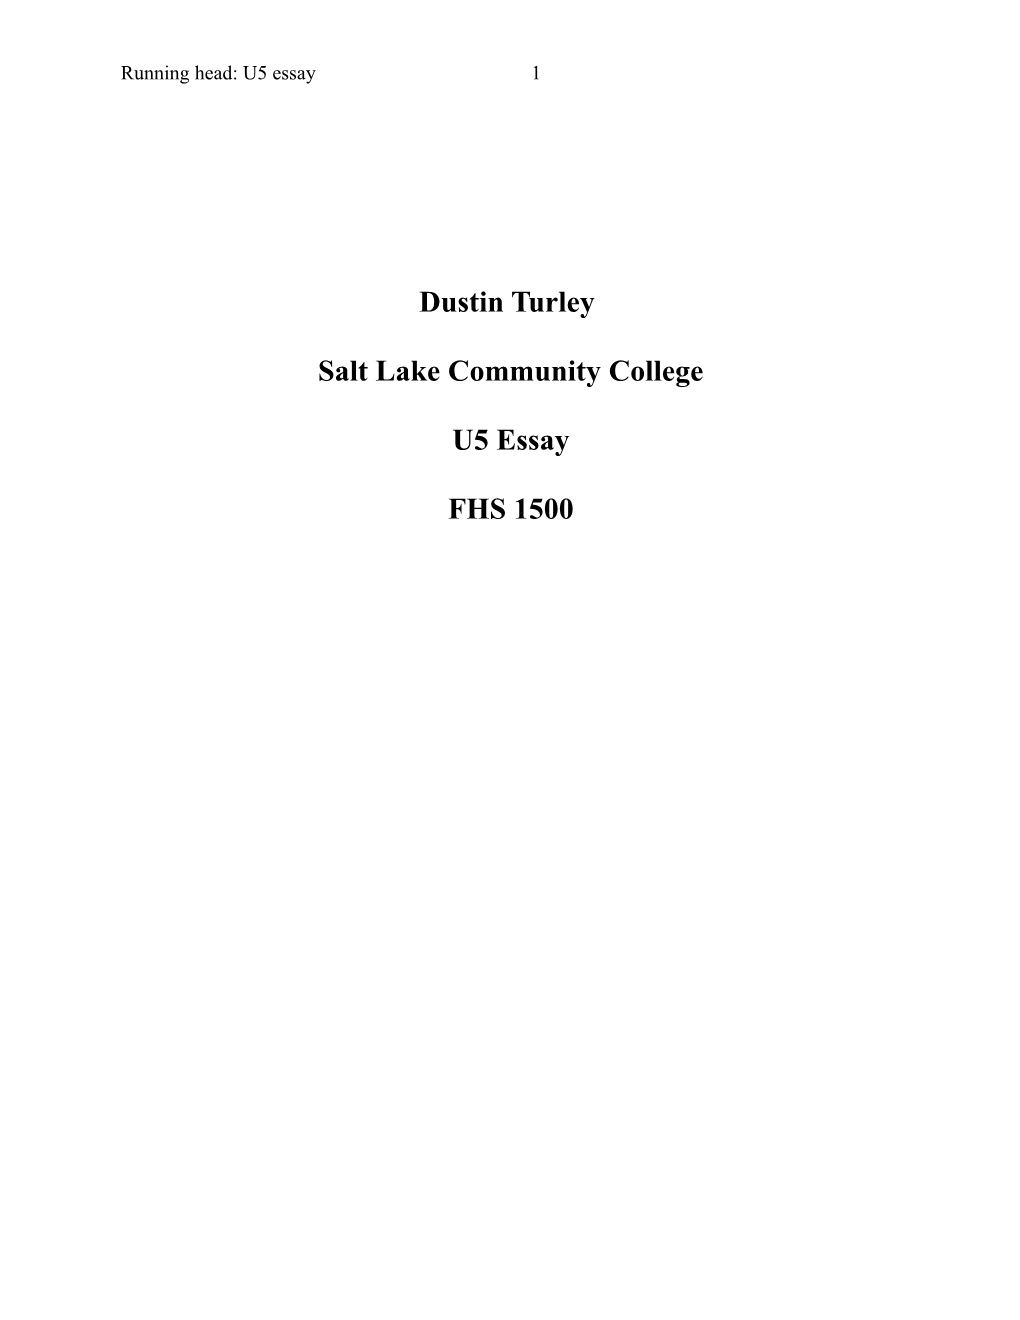 Dustin Turley Salt Lake Community College U5 Essay FHS 1500